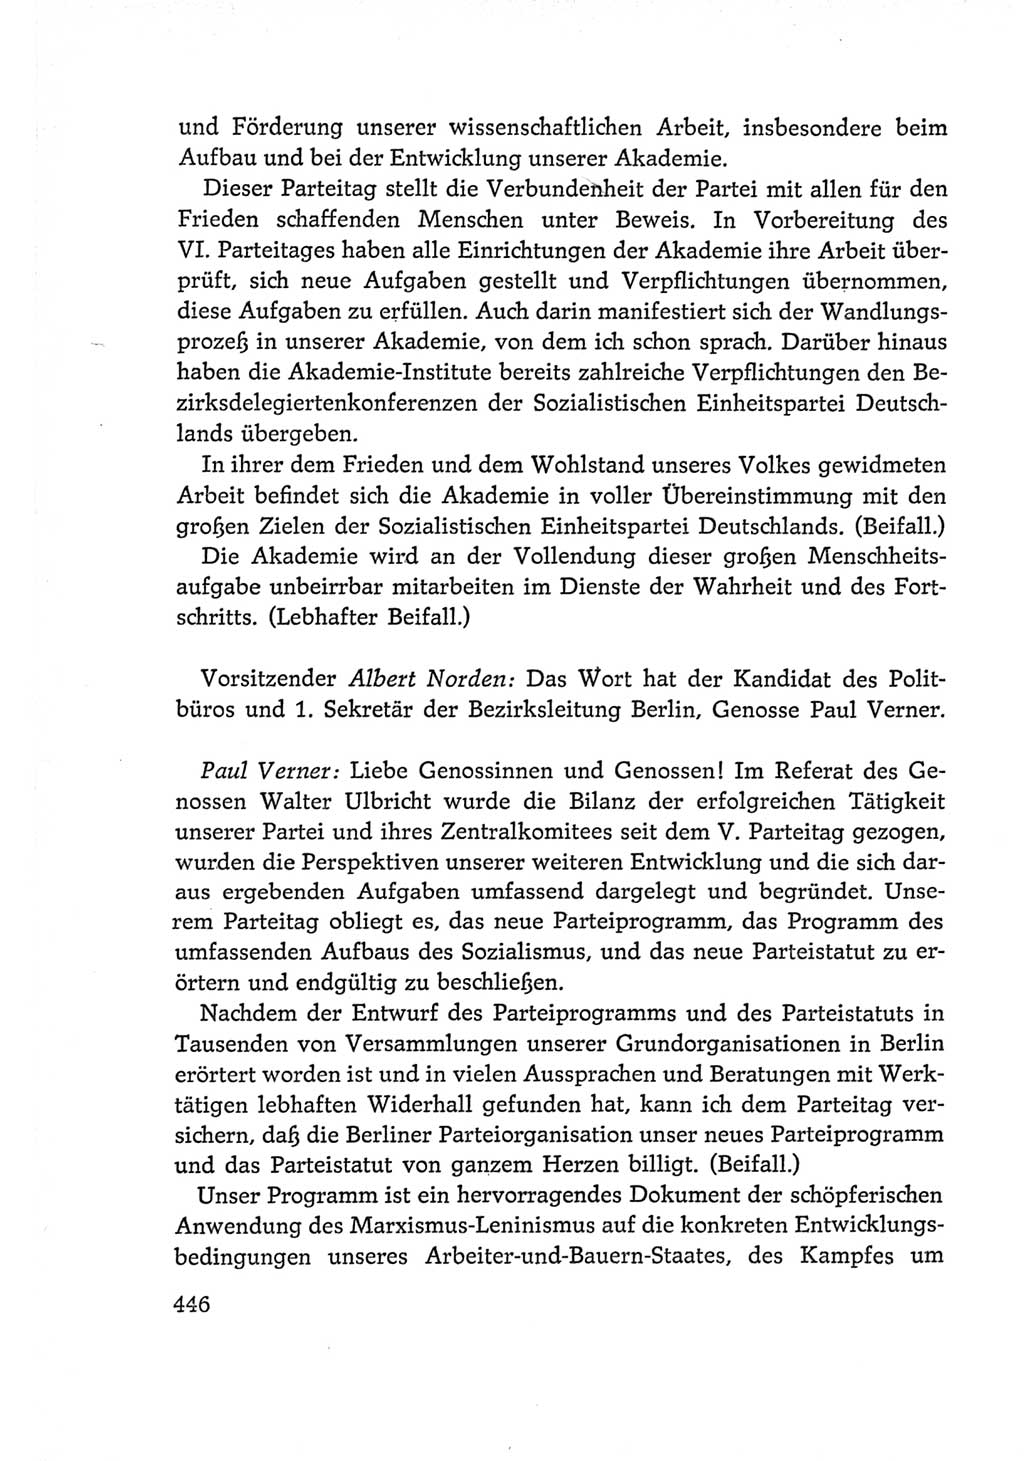 Protokoll der Verhandlungen des Ⅵ. Parteitages der Sozialistischen Einheitspartei Deutschlands (SED) [Deutsche Demokratische Republik (DDR)] 1963, Band Ⅰ, Seite 446 (Prot. Verh. Ⅵ. PT SED DDR 1963, Bd. Ⅰ, S. 446)